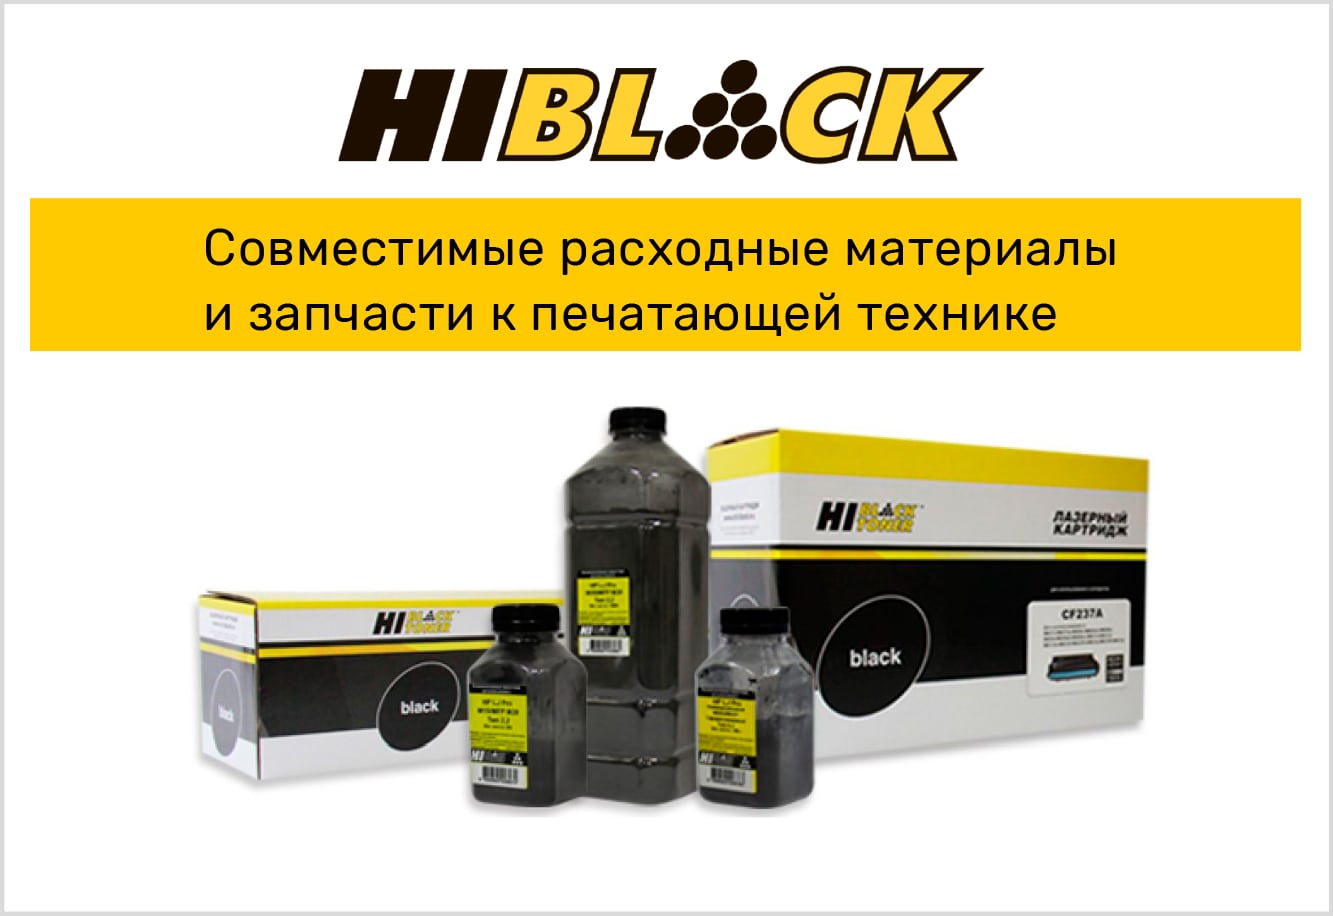 hi-black-brand-vtt.jpg